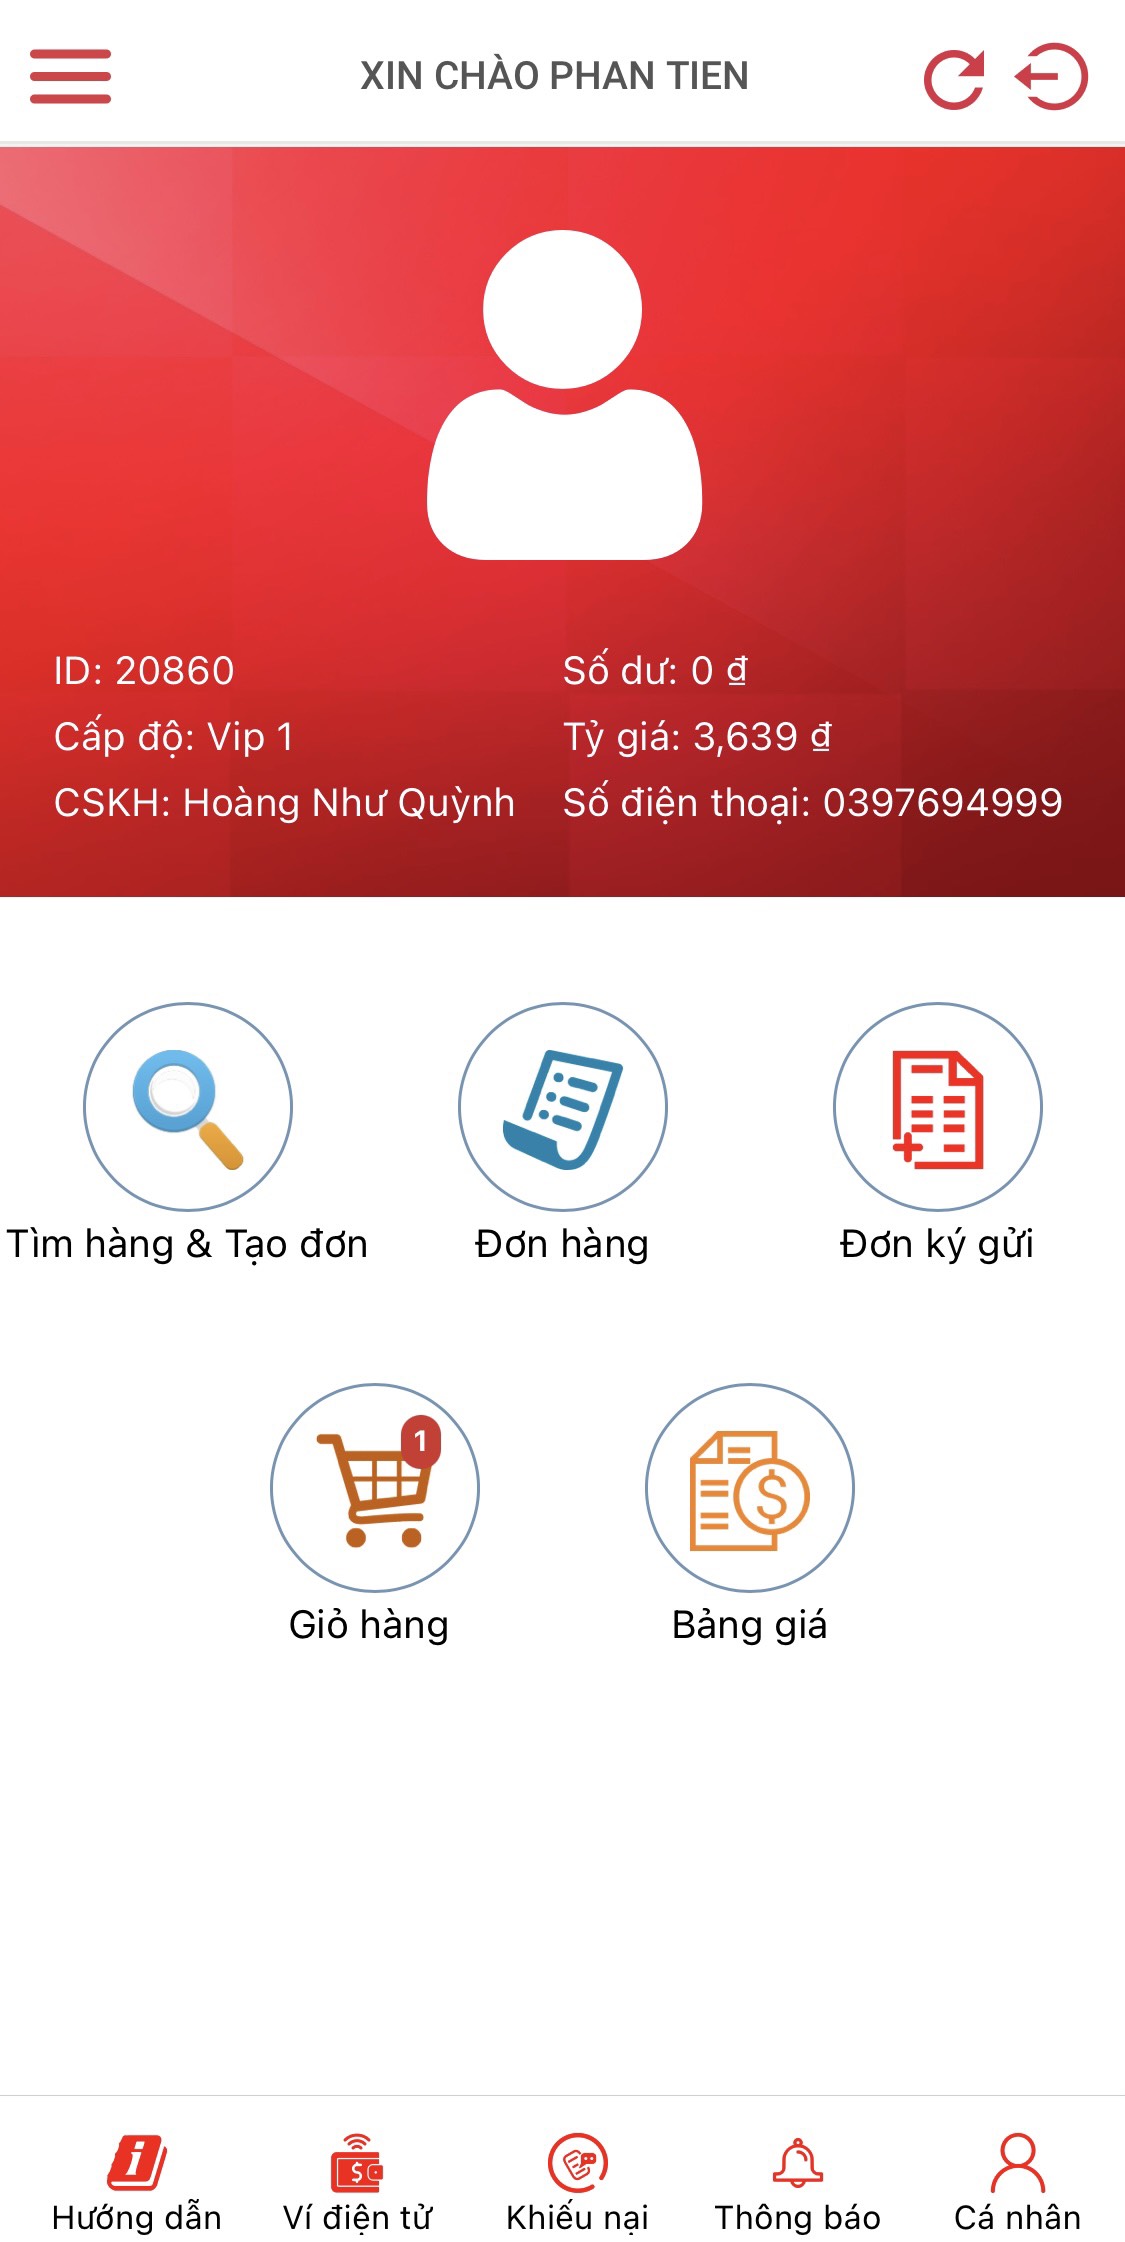 Cách mua hàng trên Taobao bằng điện thoại 